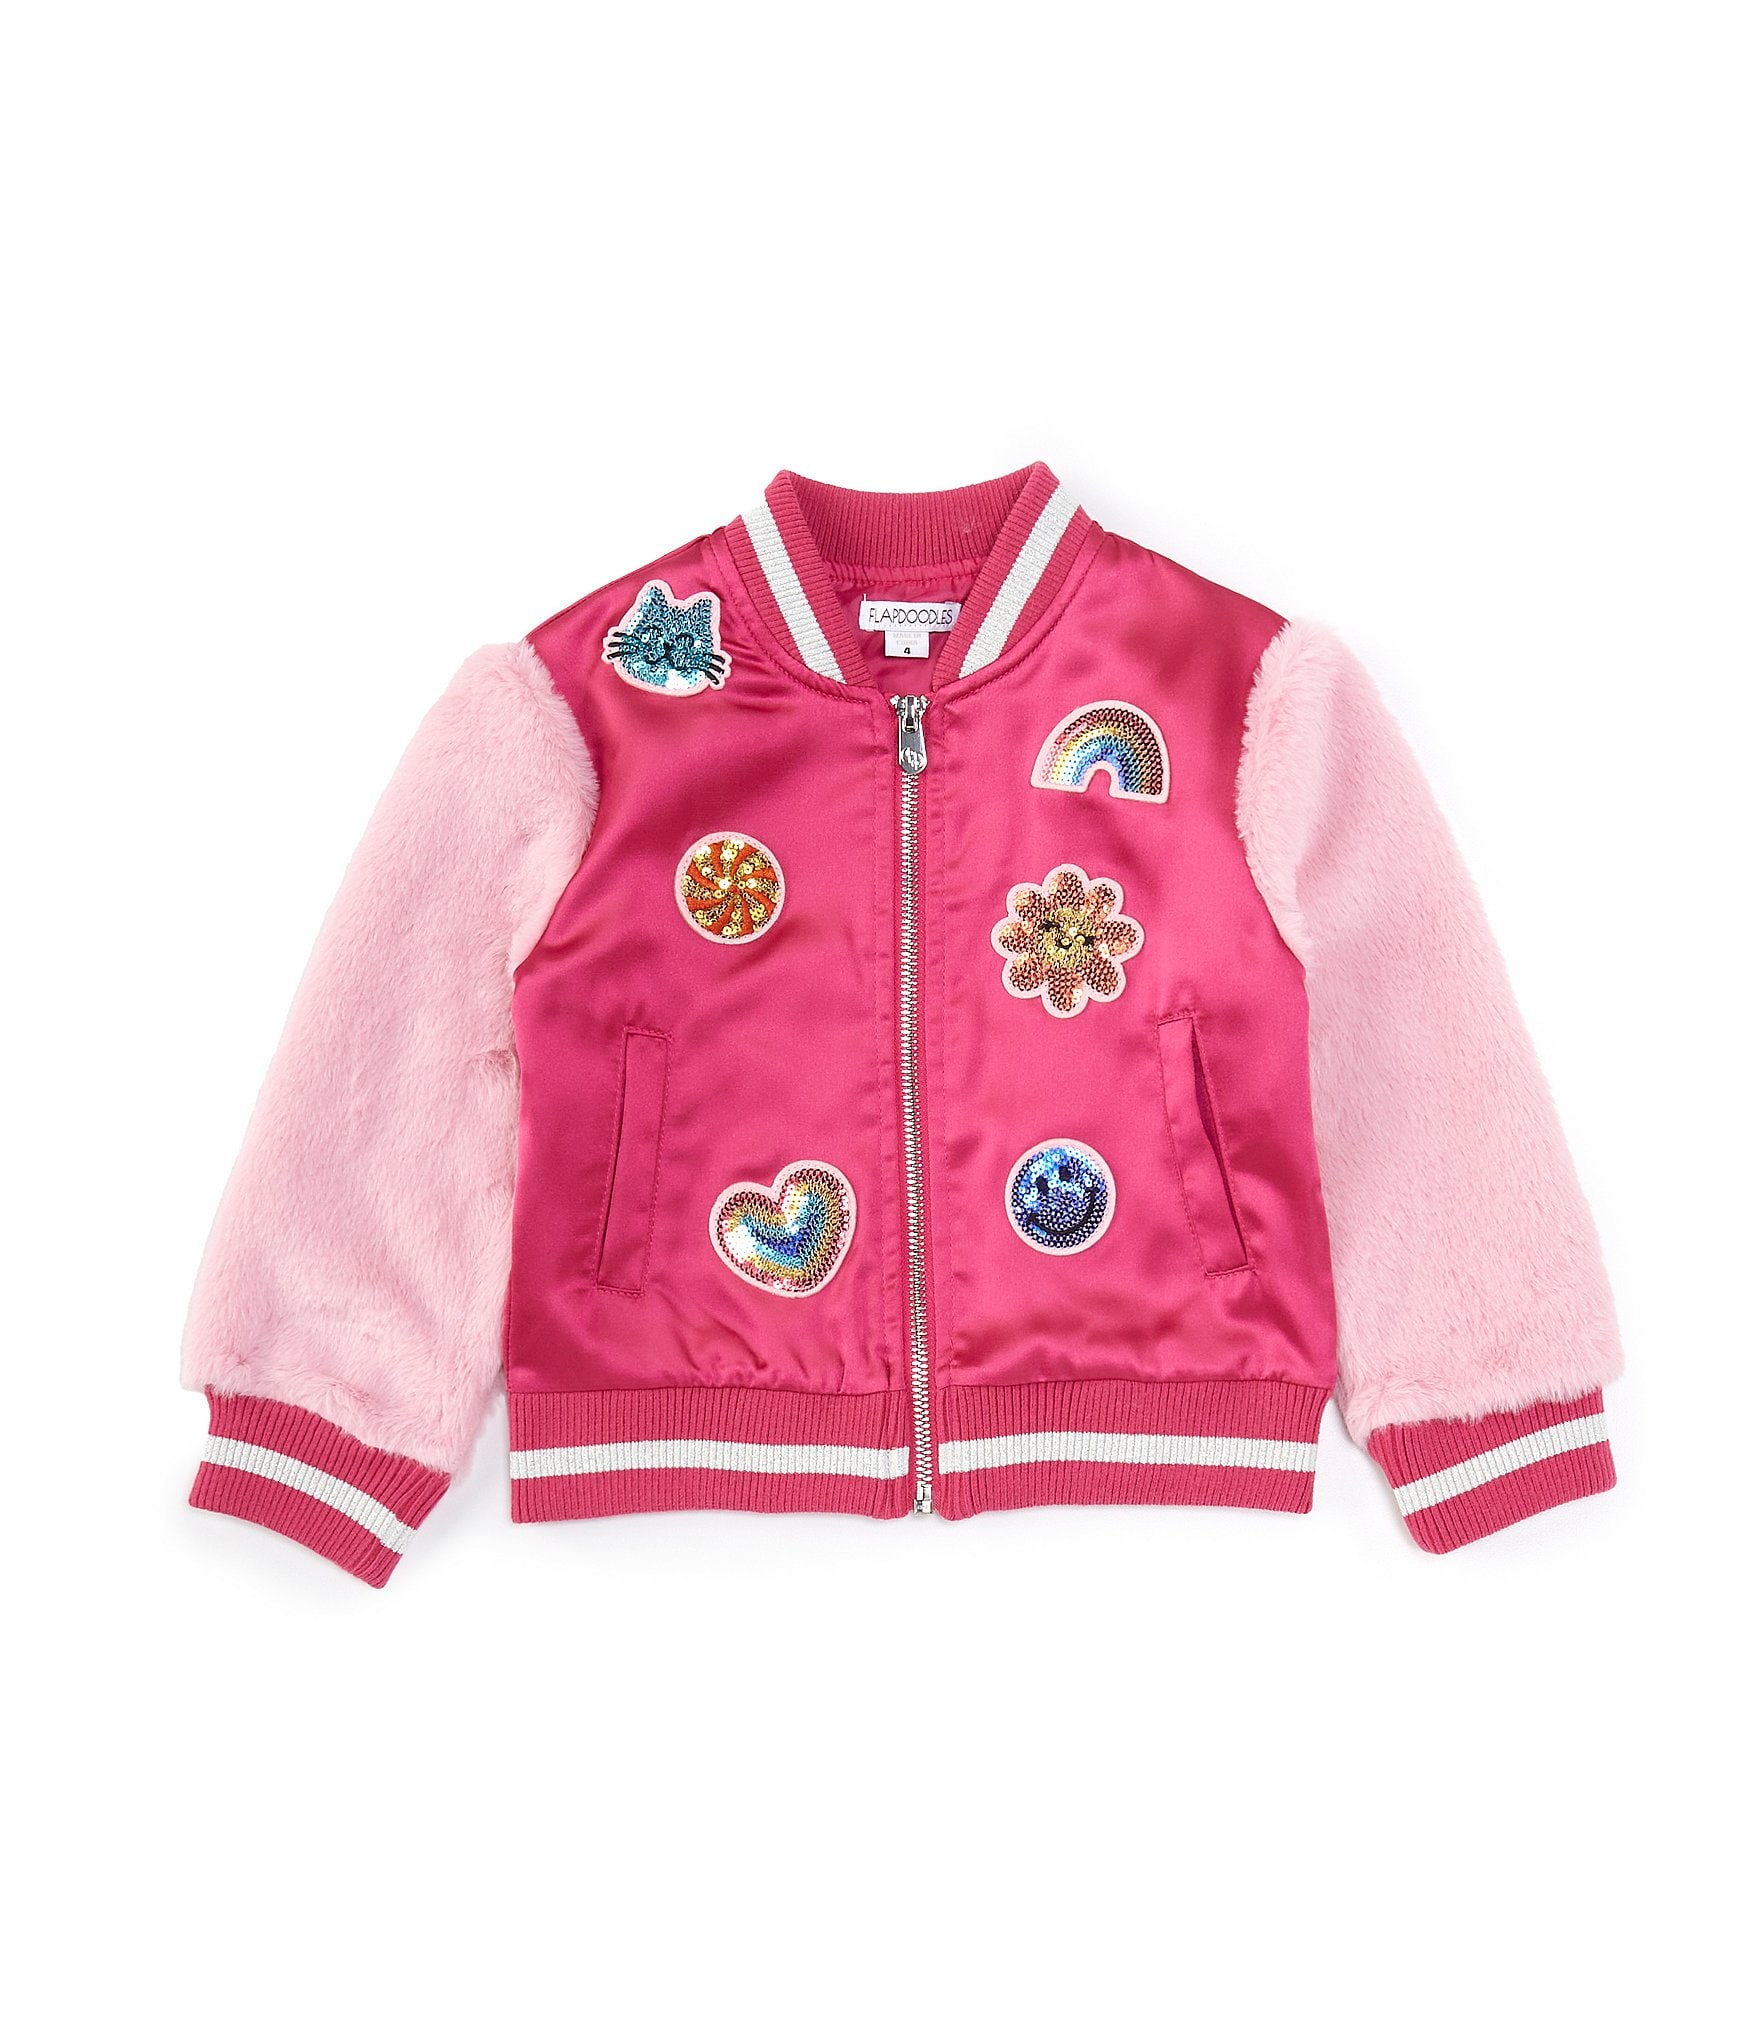 Kukukid Kids Girl Bomber Jacket in Pink Flamingos